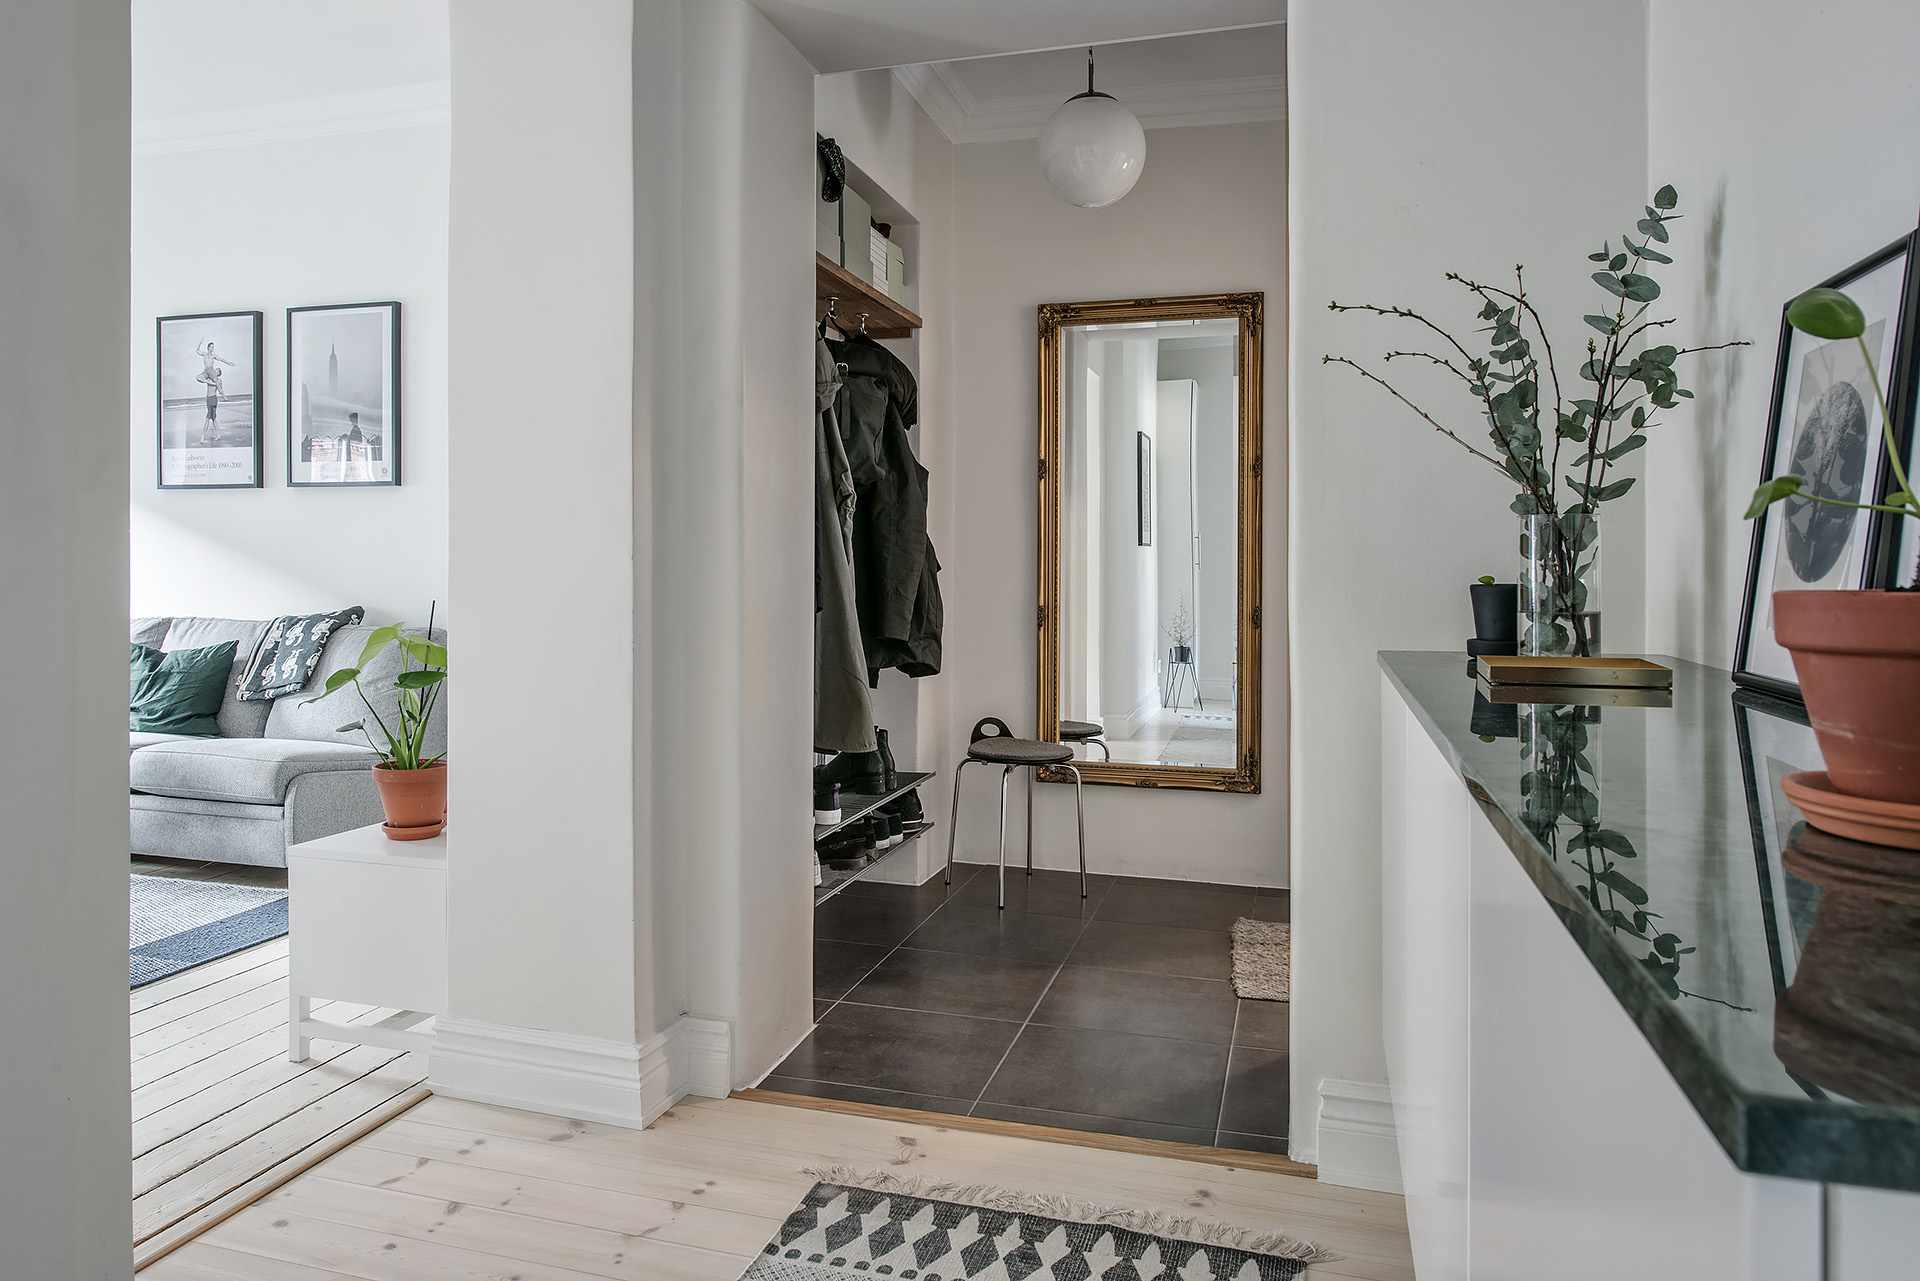 El pasillo de un apartamento - elige el estilo nórdico minimalista